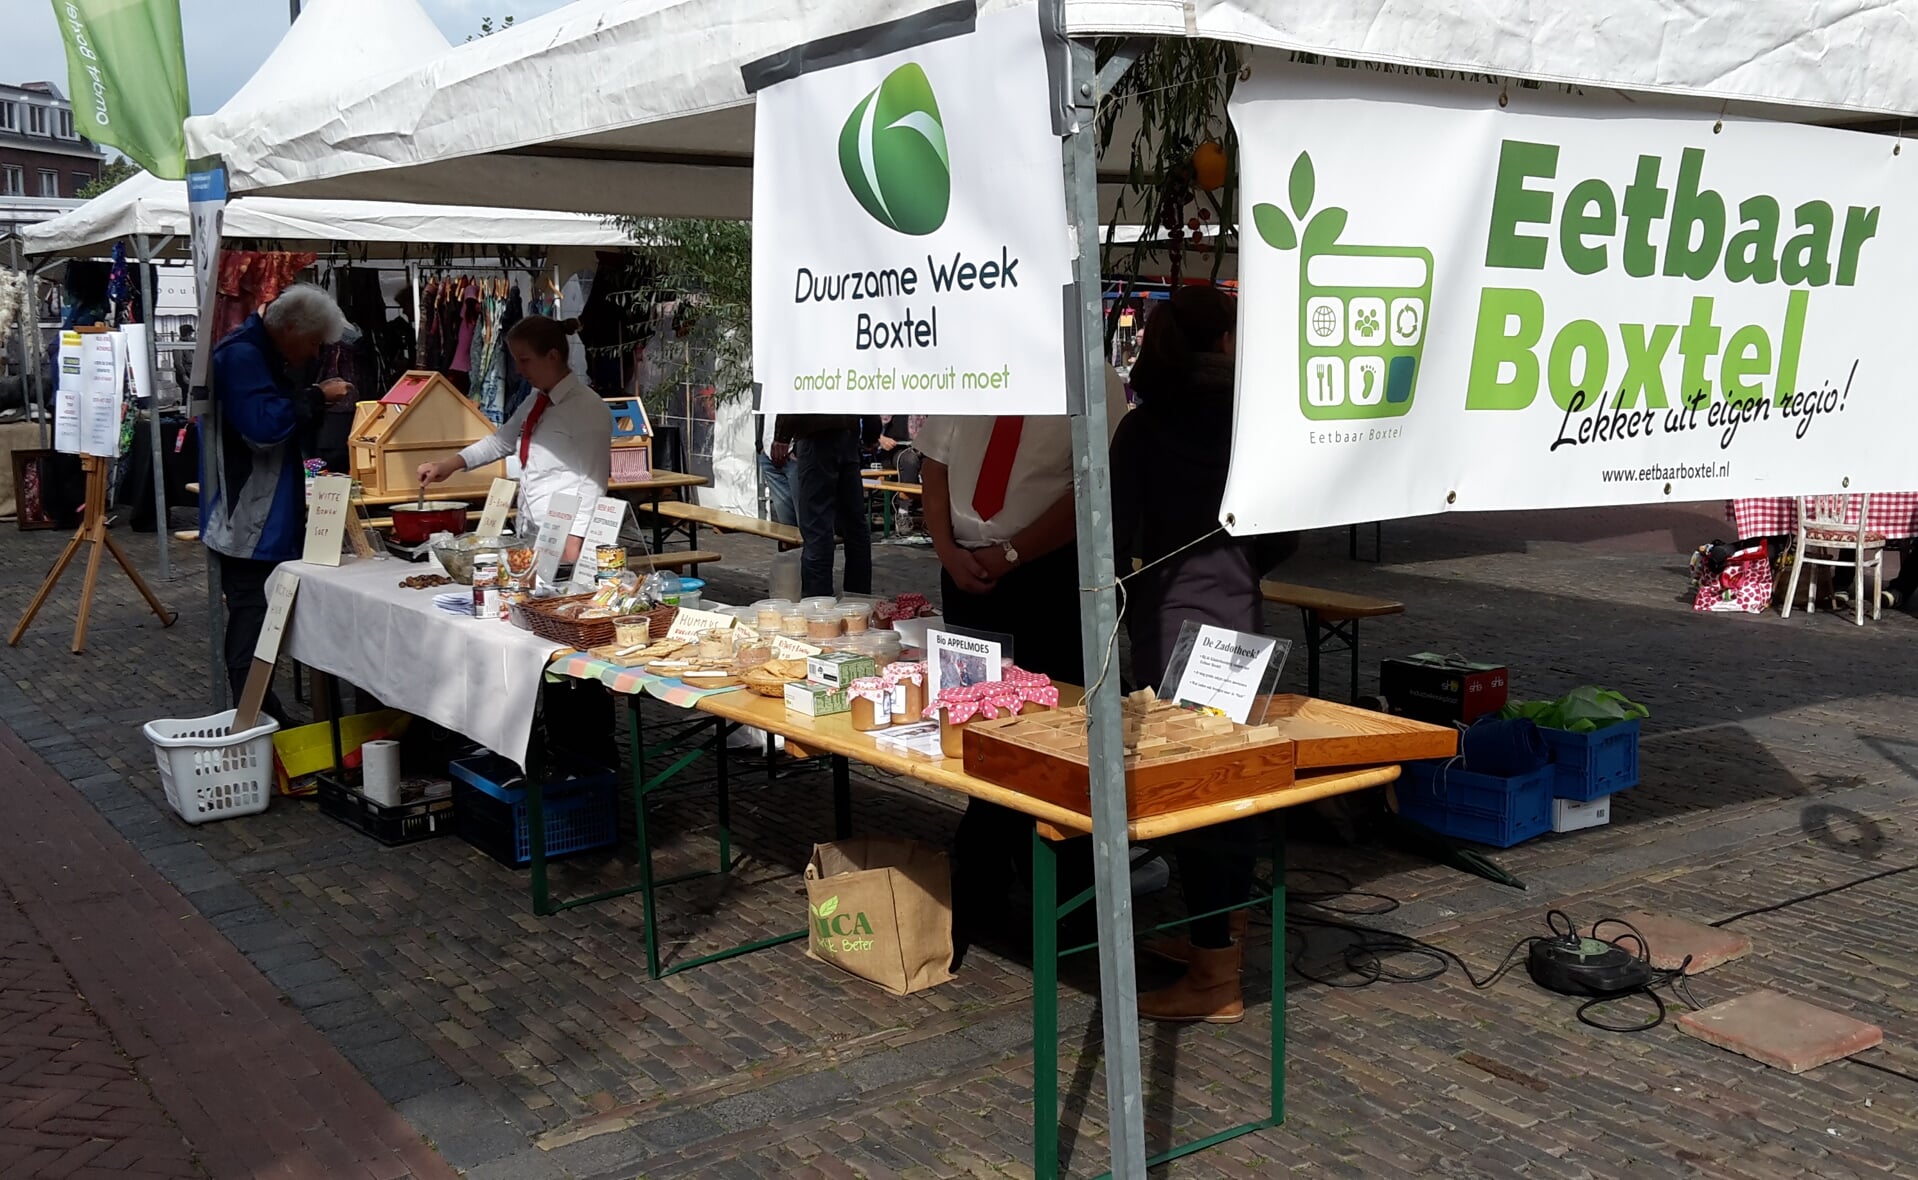 In een van de kramen van de Herfstfair die vandaag op de Markt wordt gehouden, wordt aandacht gevraagd voor de Duurzame Week Boxtel. (Foto: Henk van Weert). 